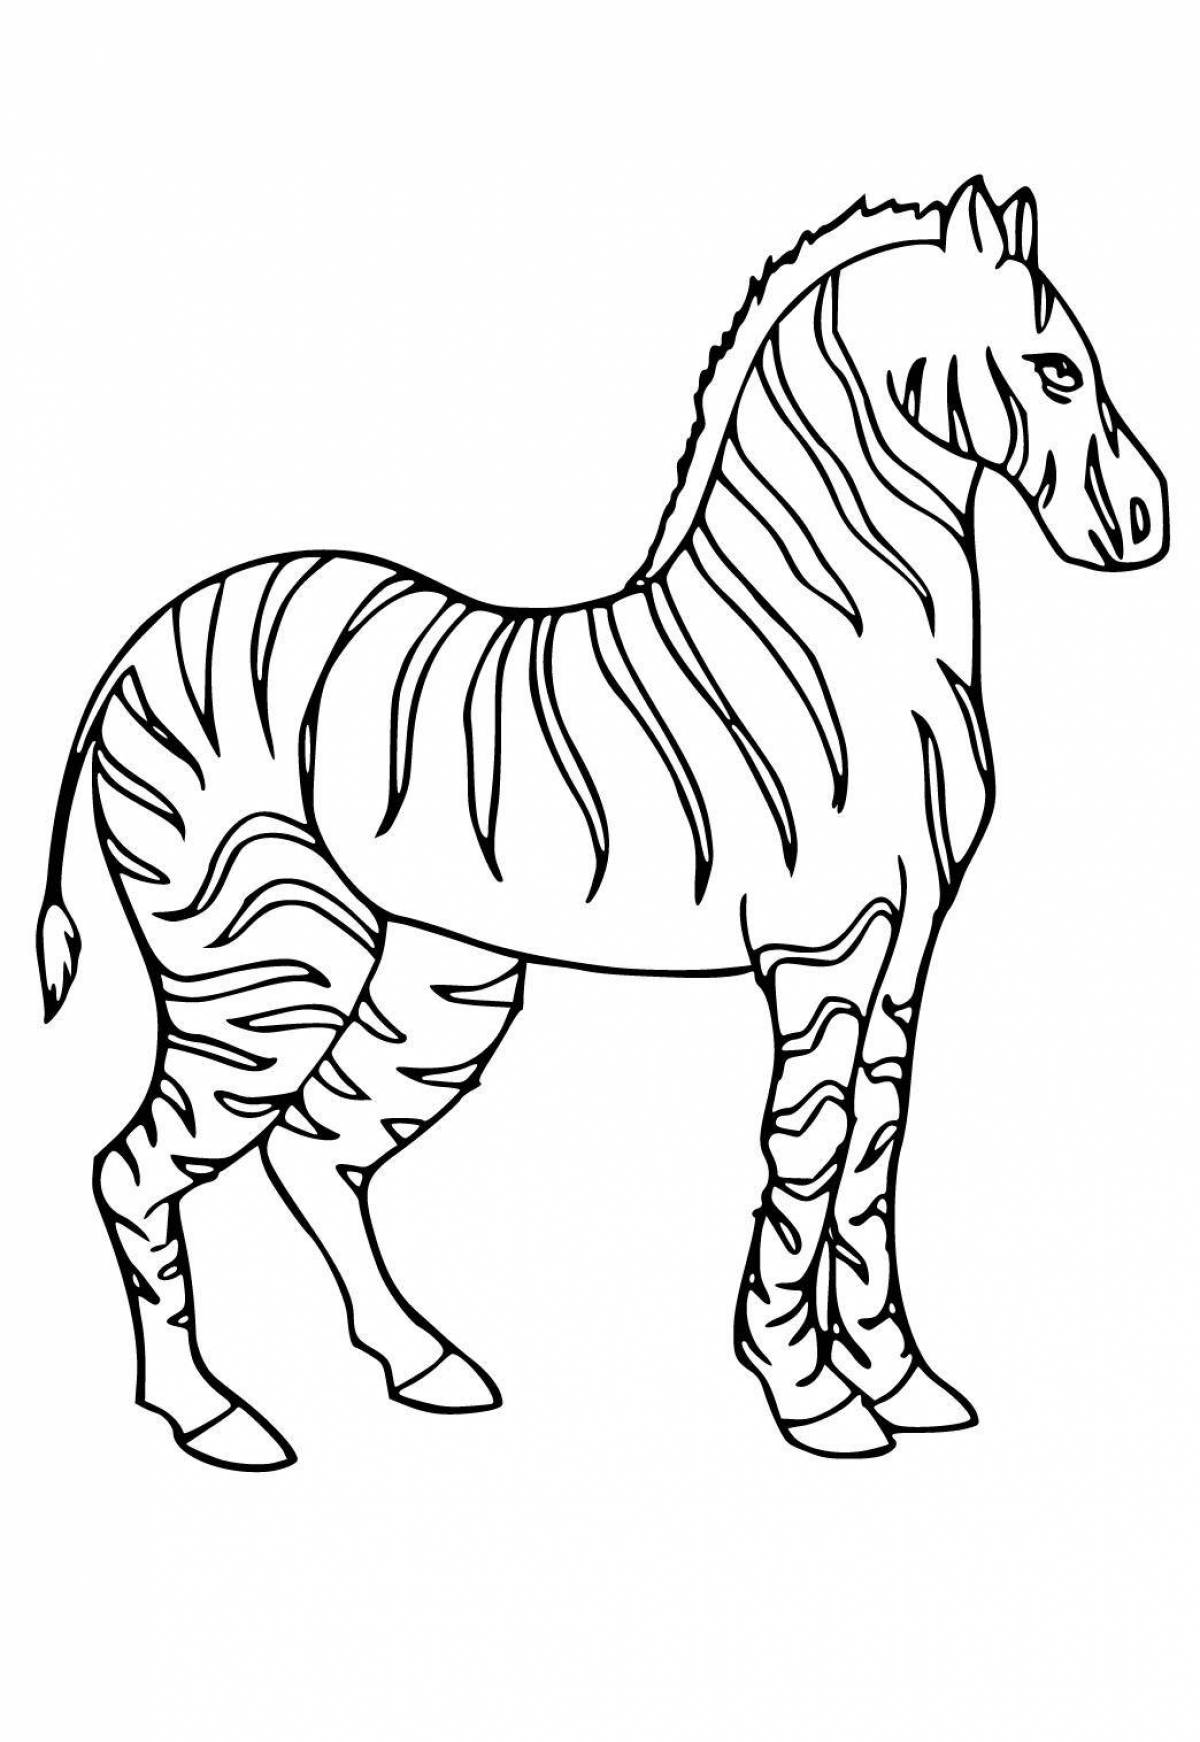 Необычная раскраска зебра для малышей 3-4 лет